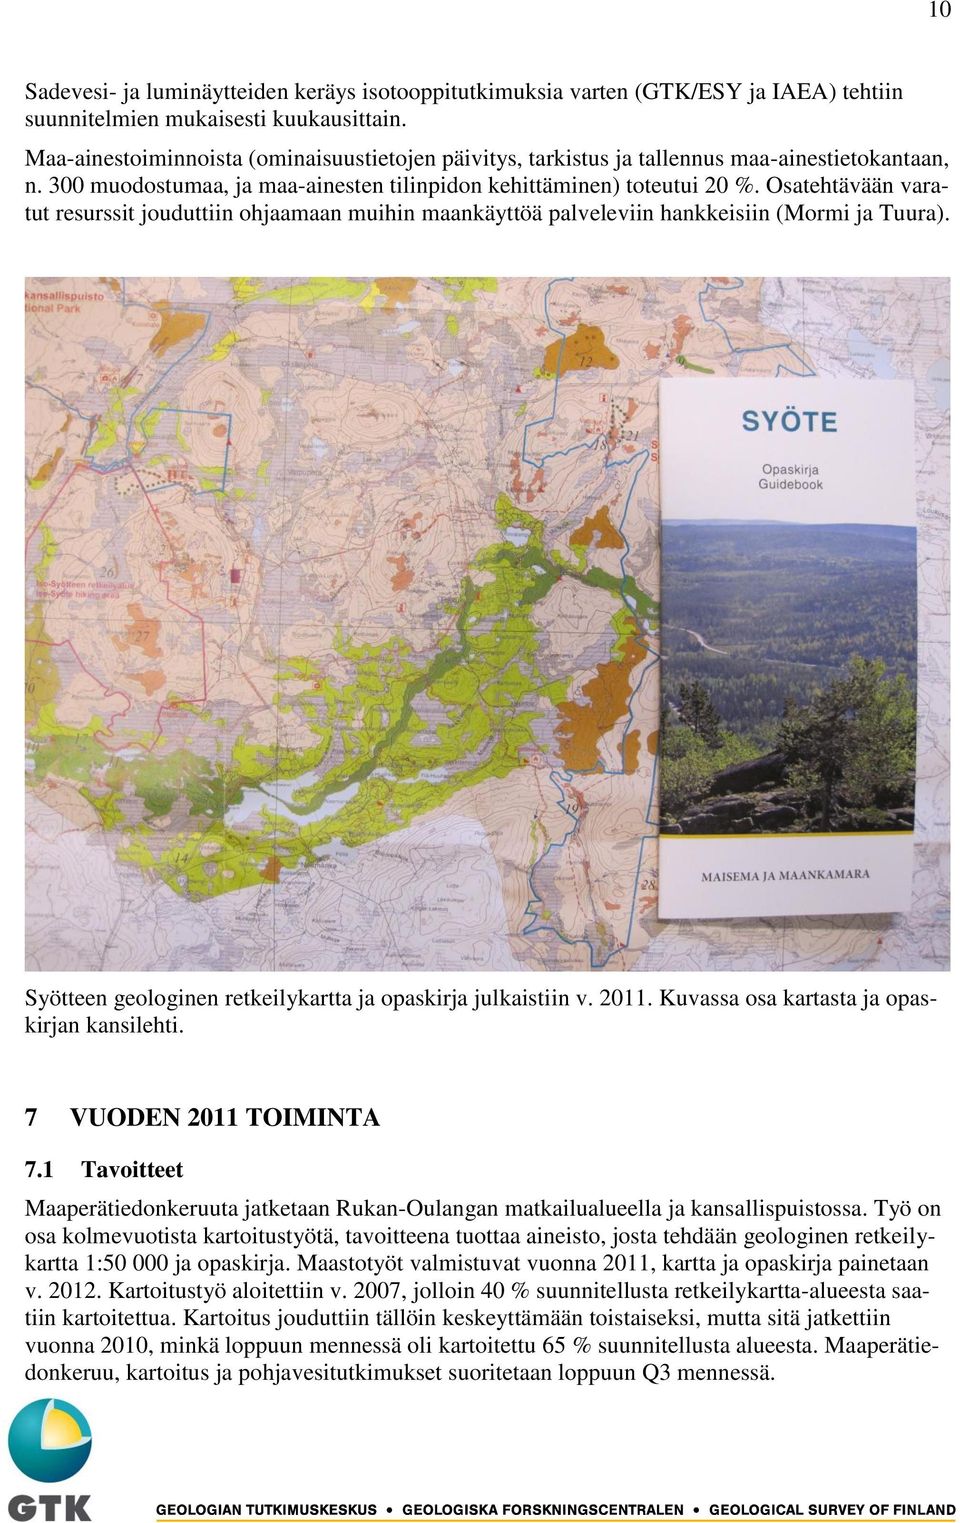 Osatehtävään varatut resurssit jouduttiin ohjaamaan muihin maankäyttöä palveleviin hankkeisiin (Mormi ja Tuura). Syötteen geologinen retkeilykartta ja opaskirja julkaistiin v. 2011.